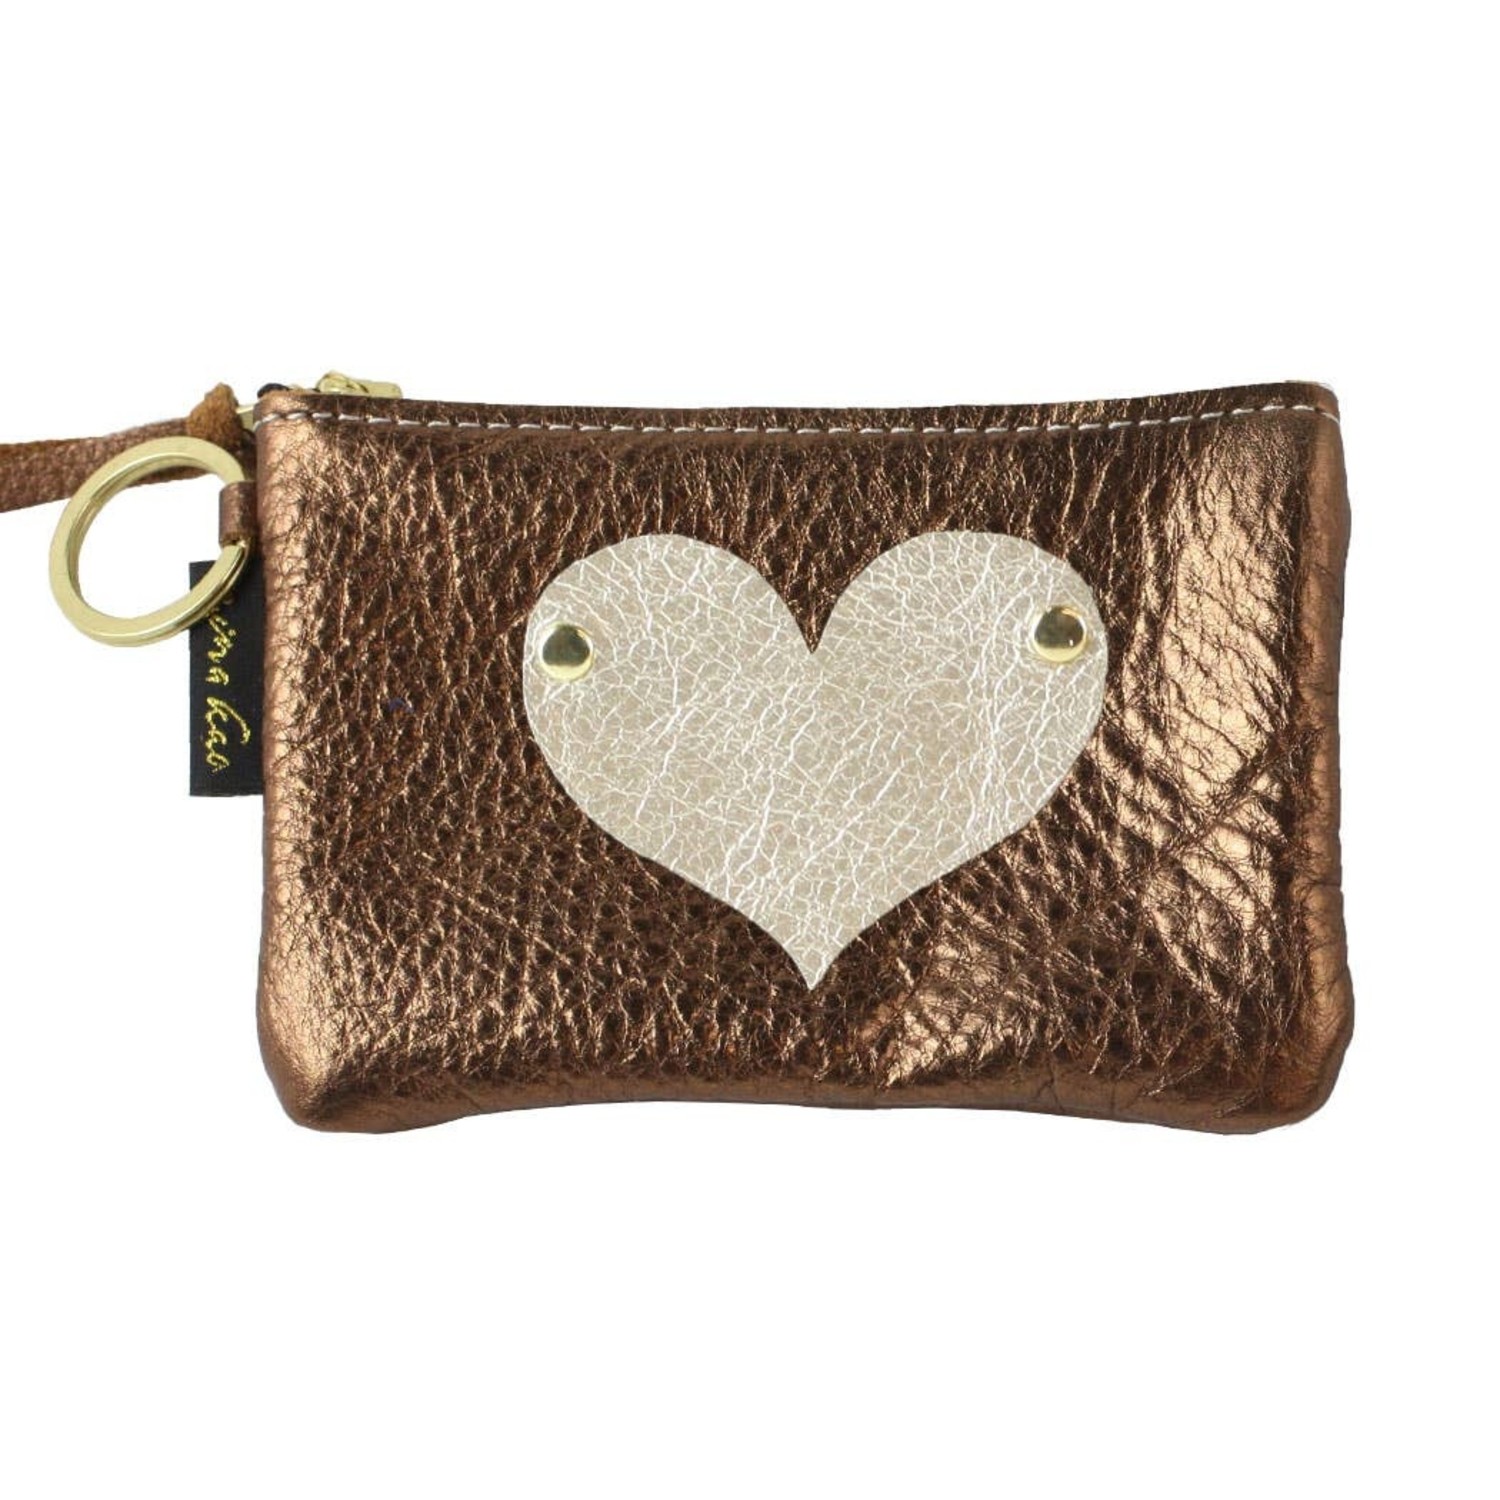 Coach heart shaped coin purse | Purses, Coin purse, Coach purses